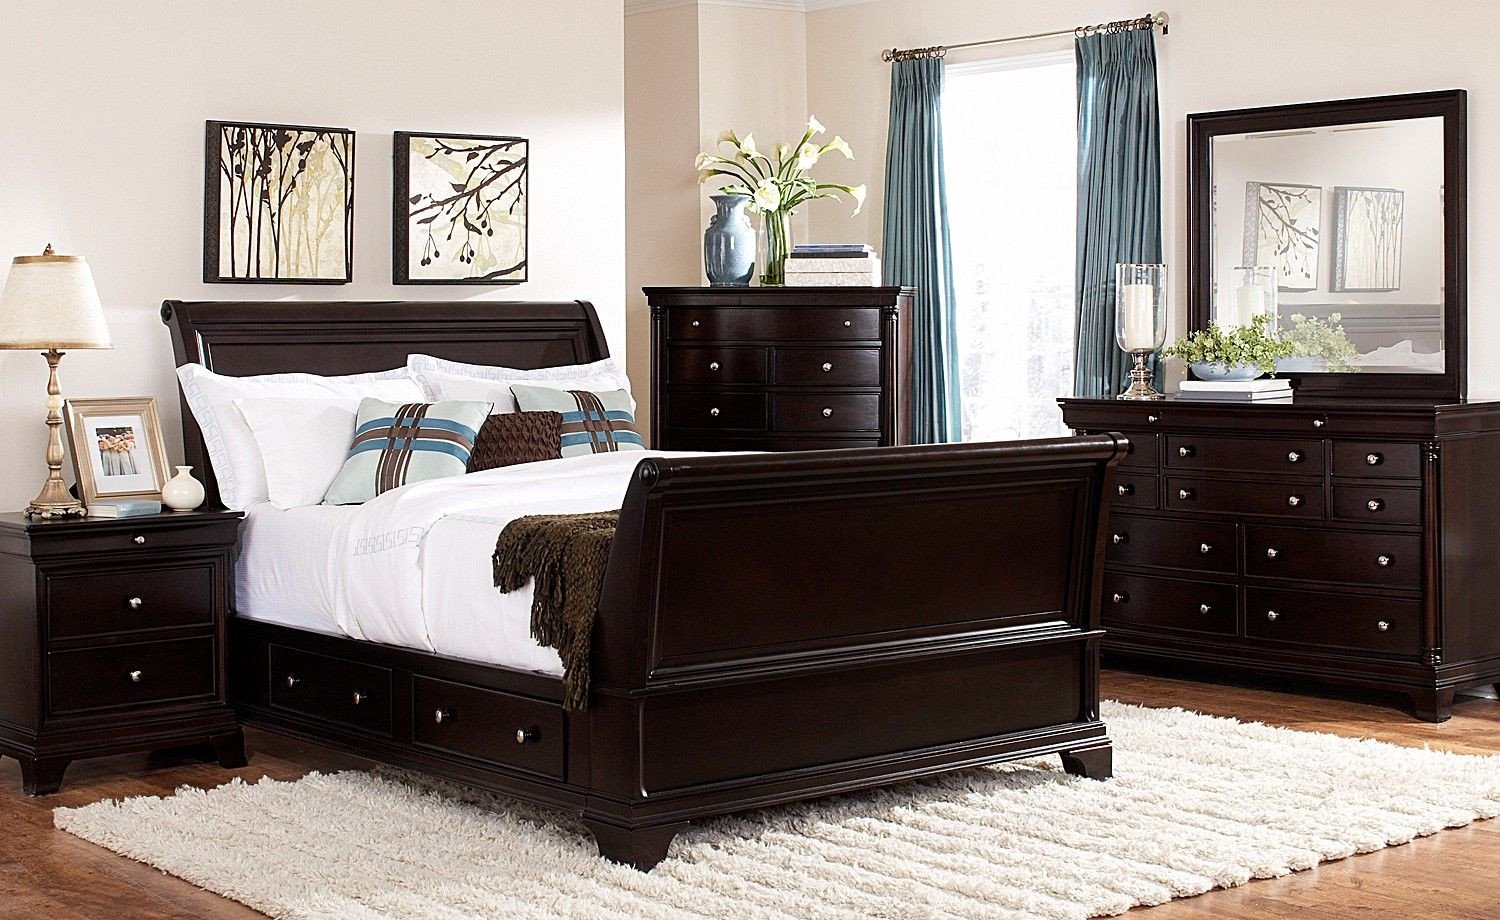 King Size Bedroom Set for Sale New Lakeshore Bedroom 7 Pc Queen Storage Bedroom Furniture